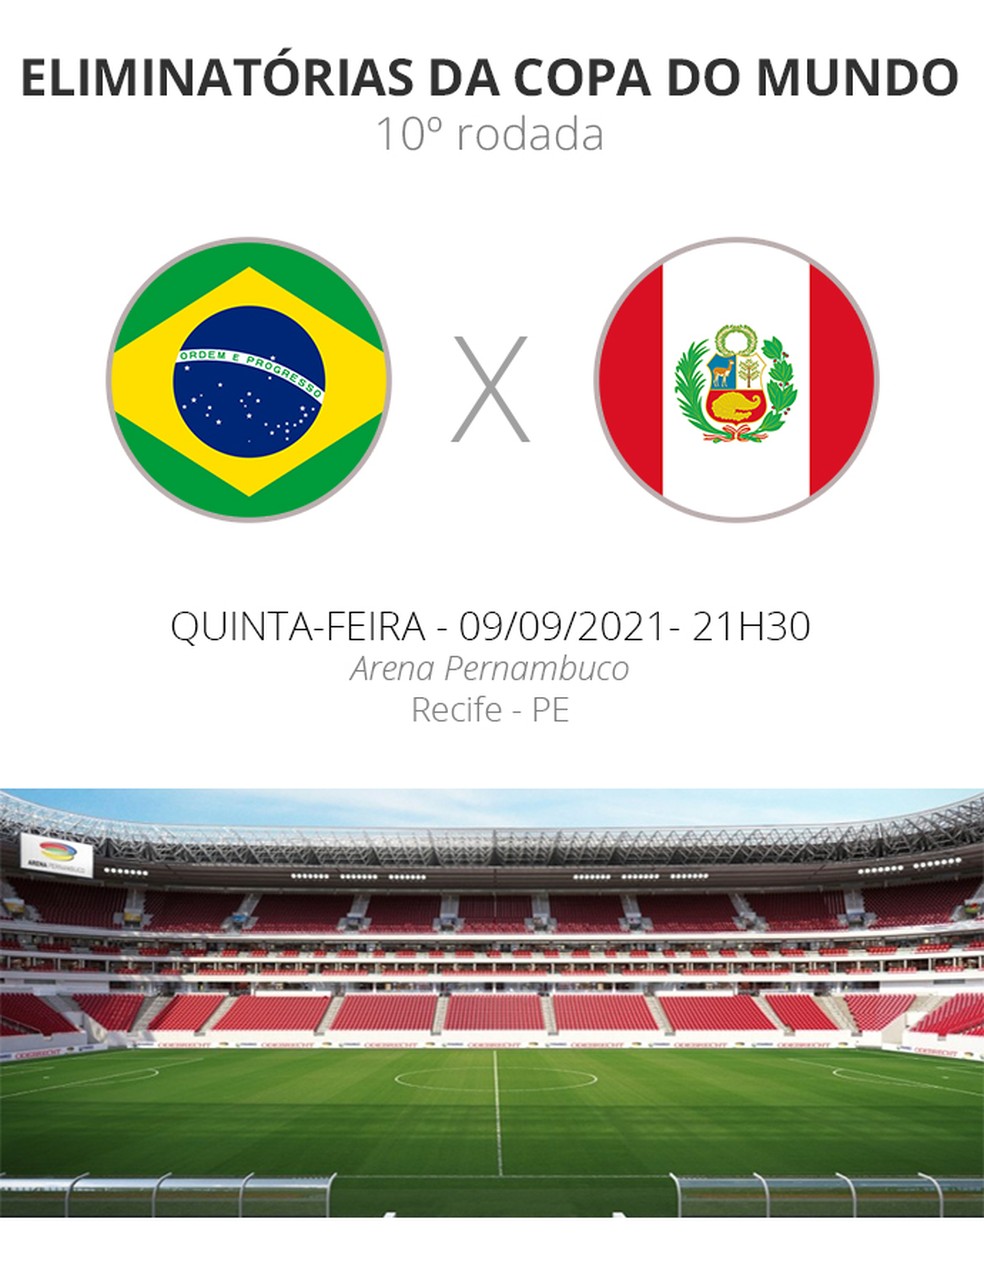 Arena Copa transmite hoje jogo da Seleção Brasileira de Futebol